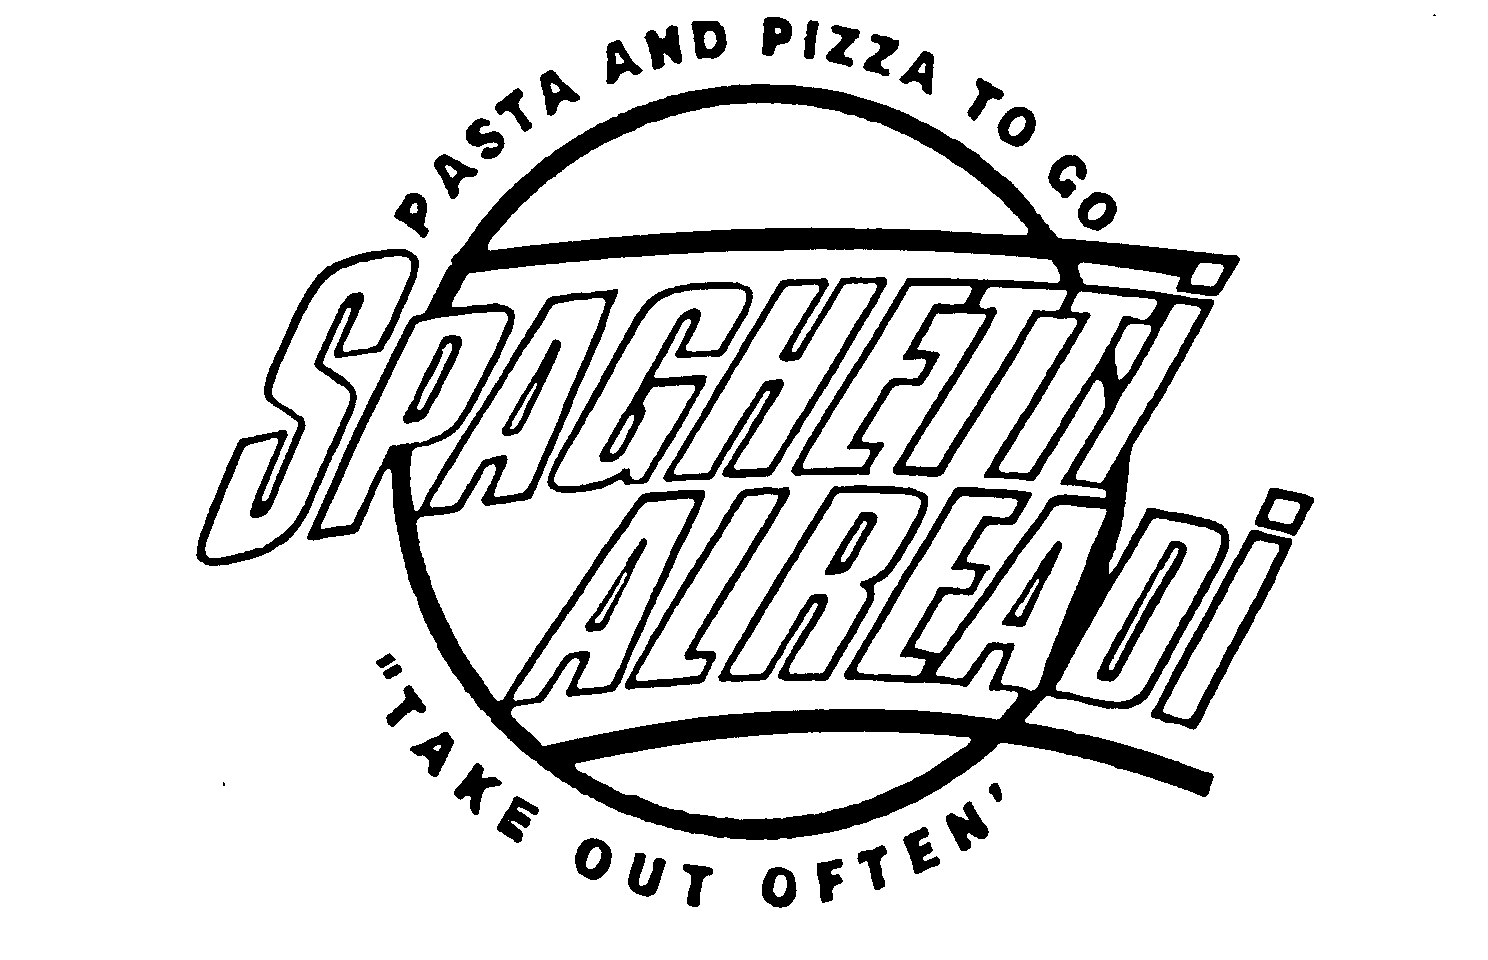  SPAGHETTI ALREADY PASTA AND PIZZA TO GO "TAKE OUT OFTEN"